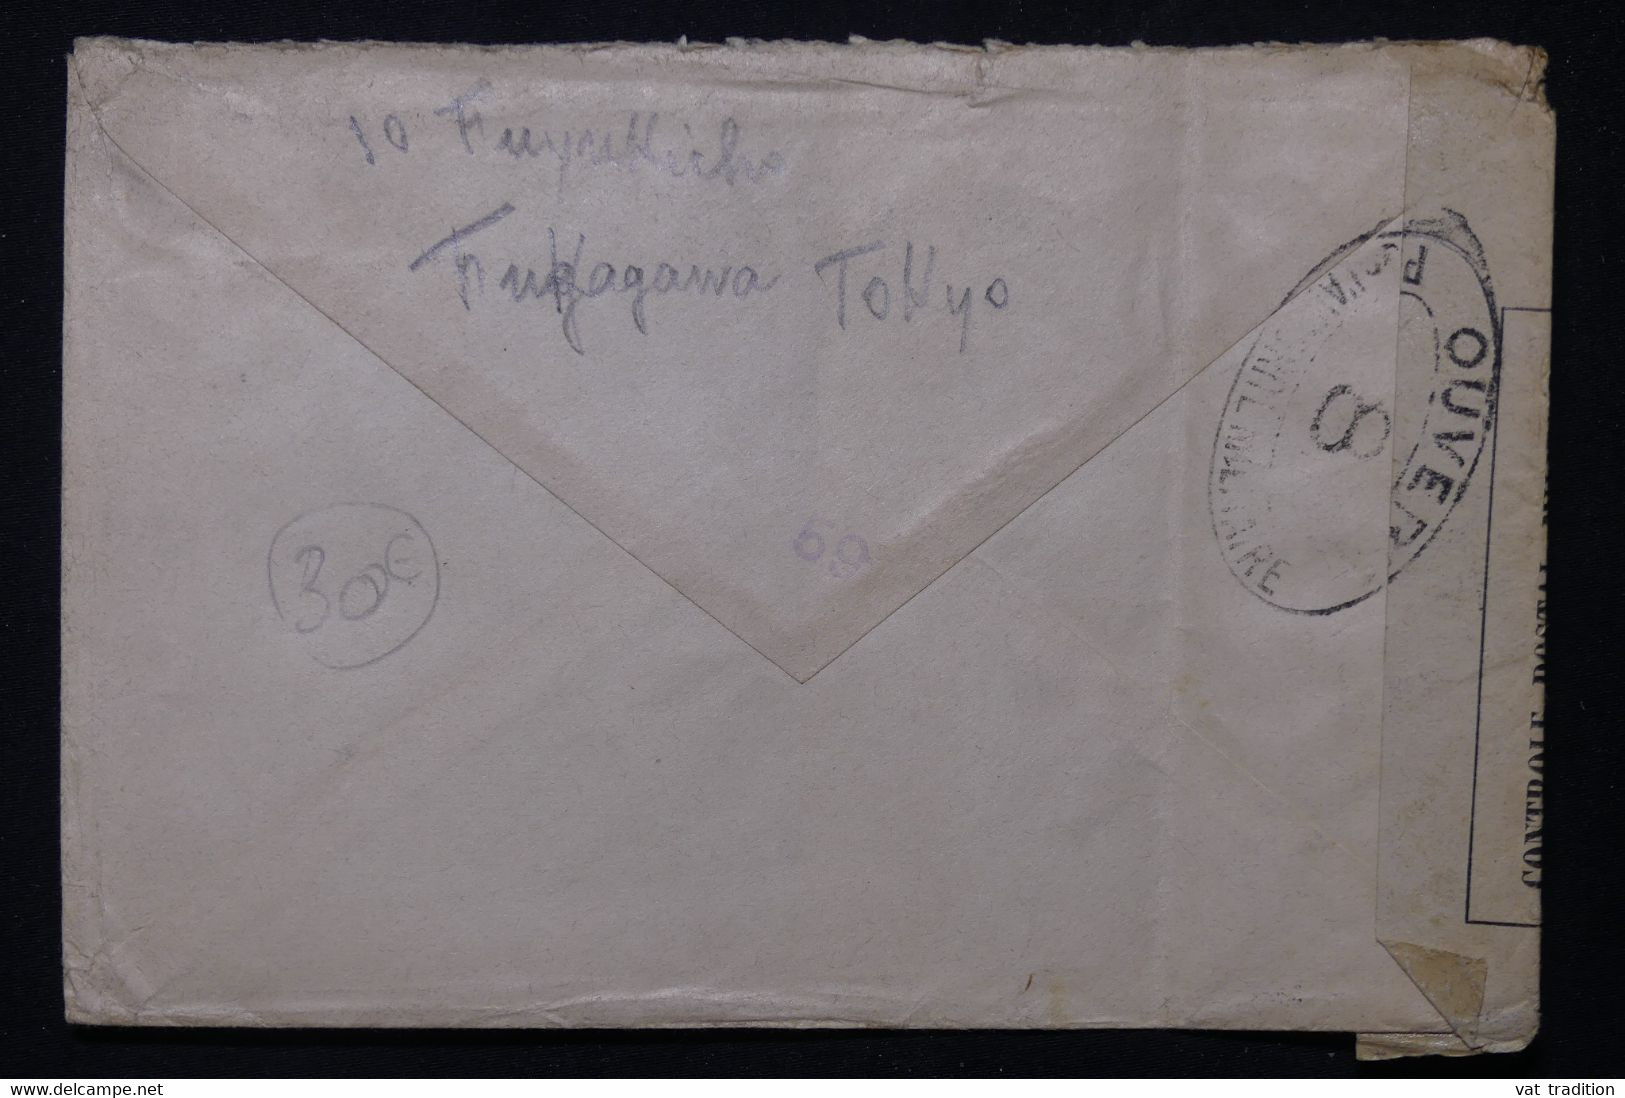 JAPON - Enveloppe De Tokyo Pour La France Avec Contrôle Postal Militaire En 1916 - L 83450 - Covers & Documents